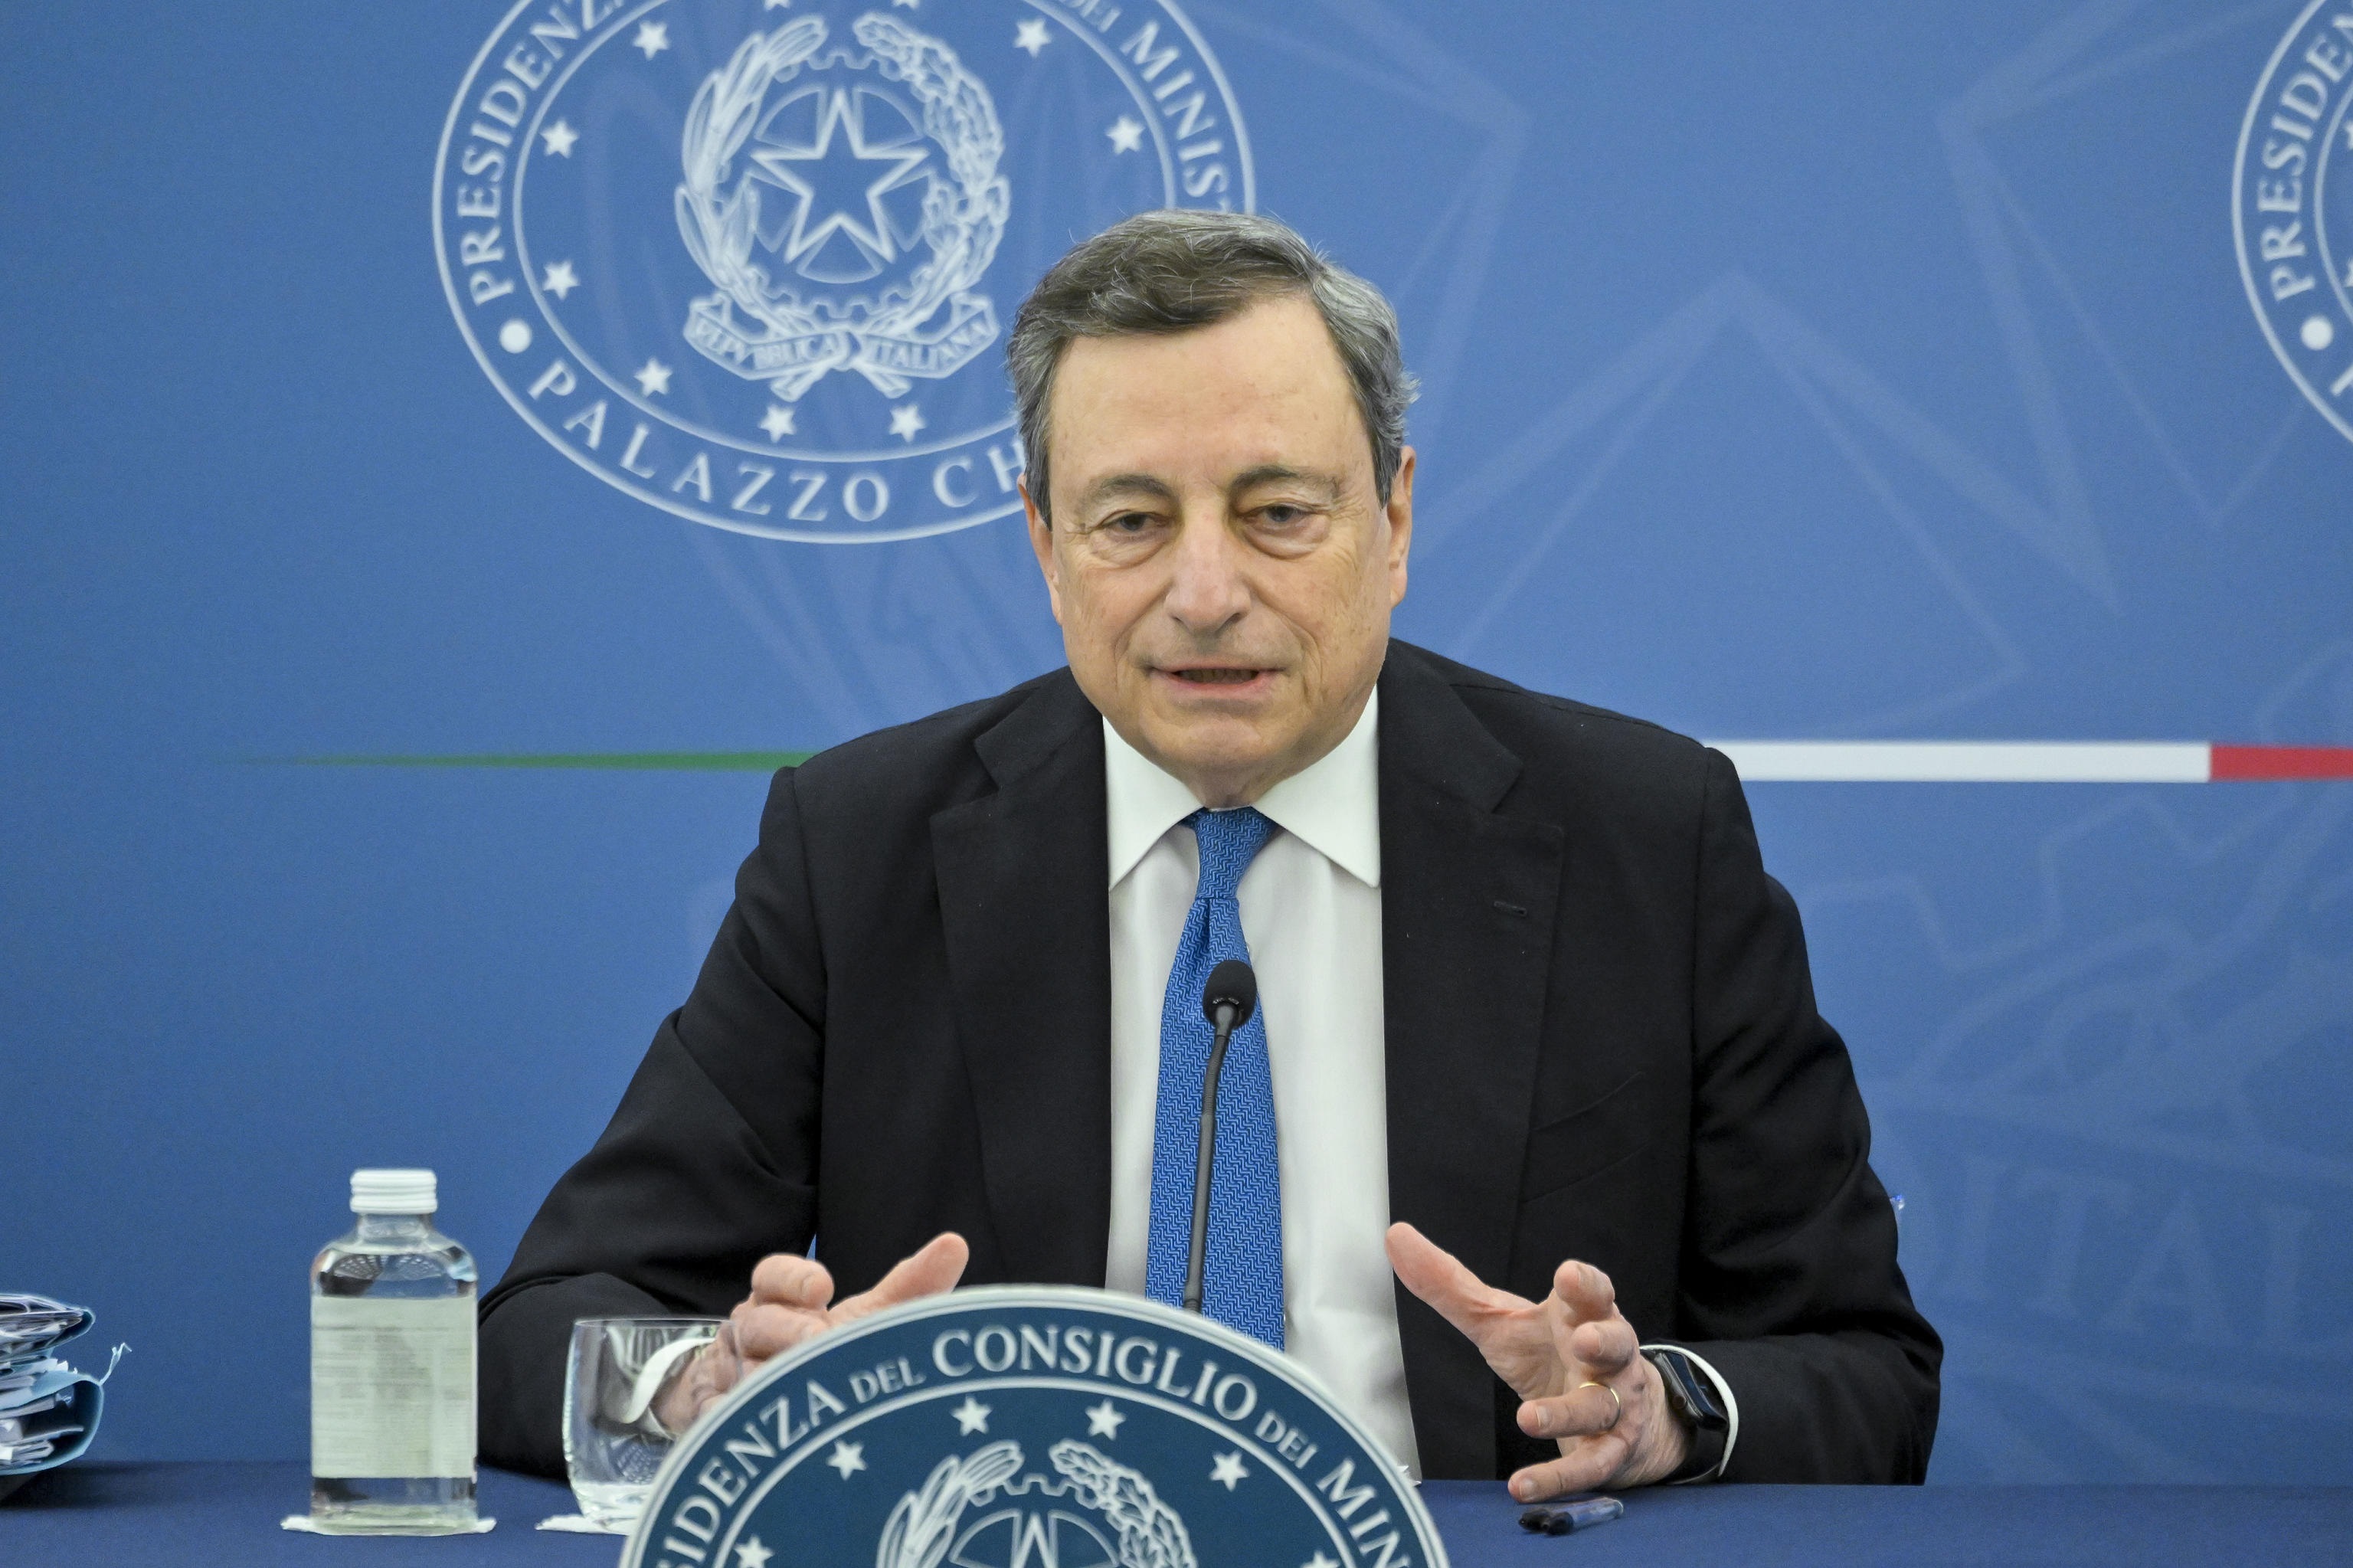 Cdm lampo, Draghi ottiene la fiducia sul Ddl concorrenza: «Era a rischio il Pnrr e la tenuta del governo»